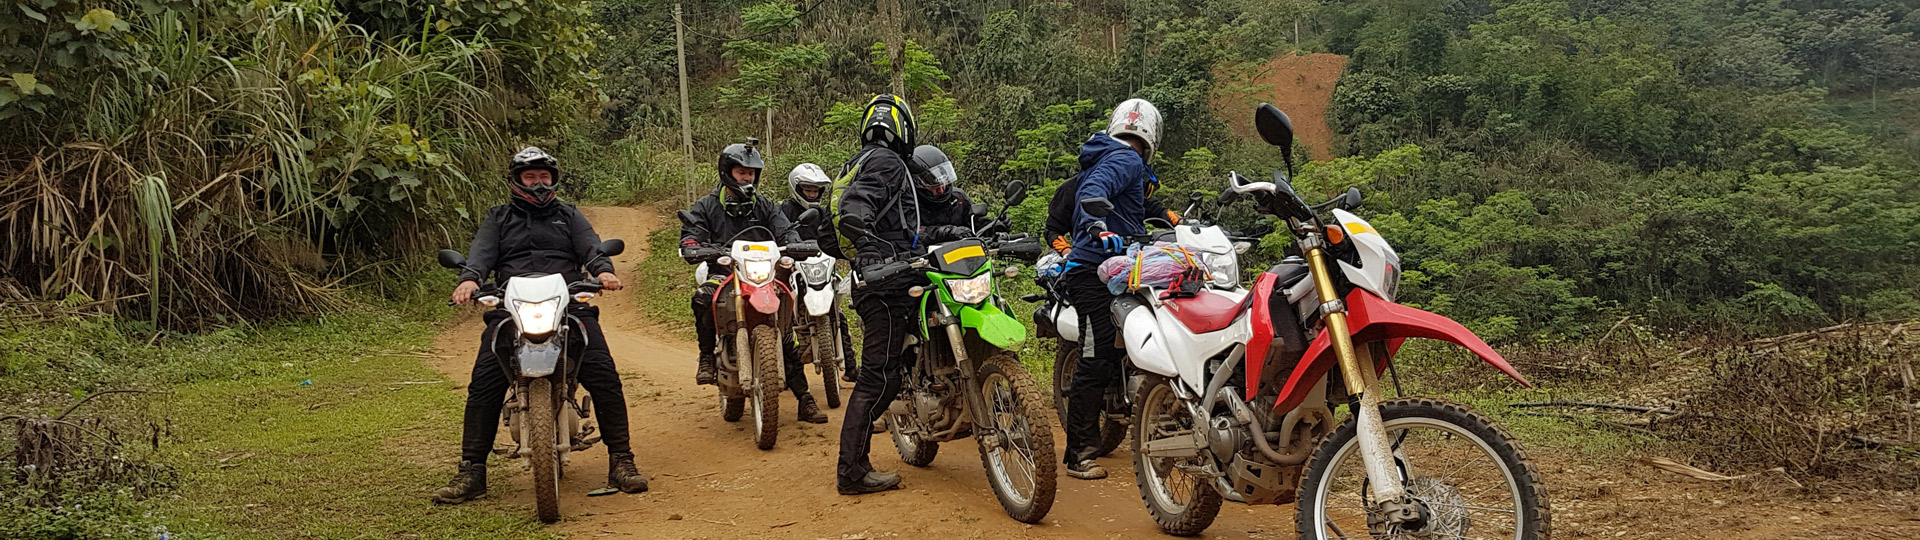 Vietnam Motorbike Tours 4